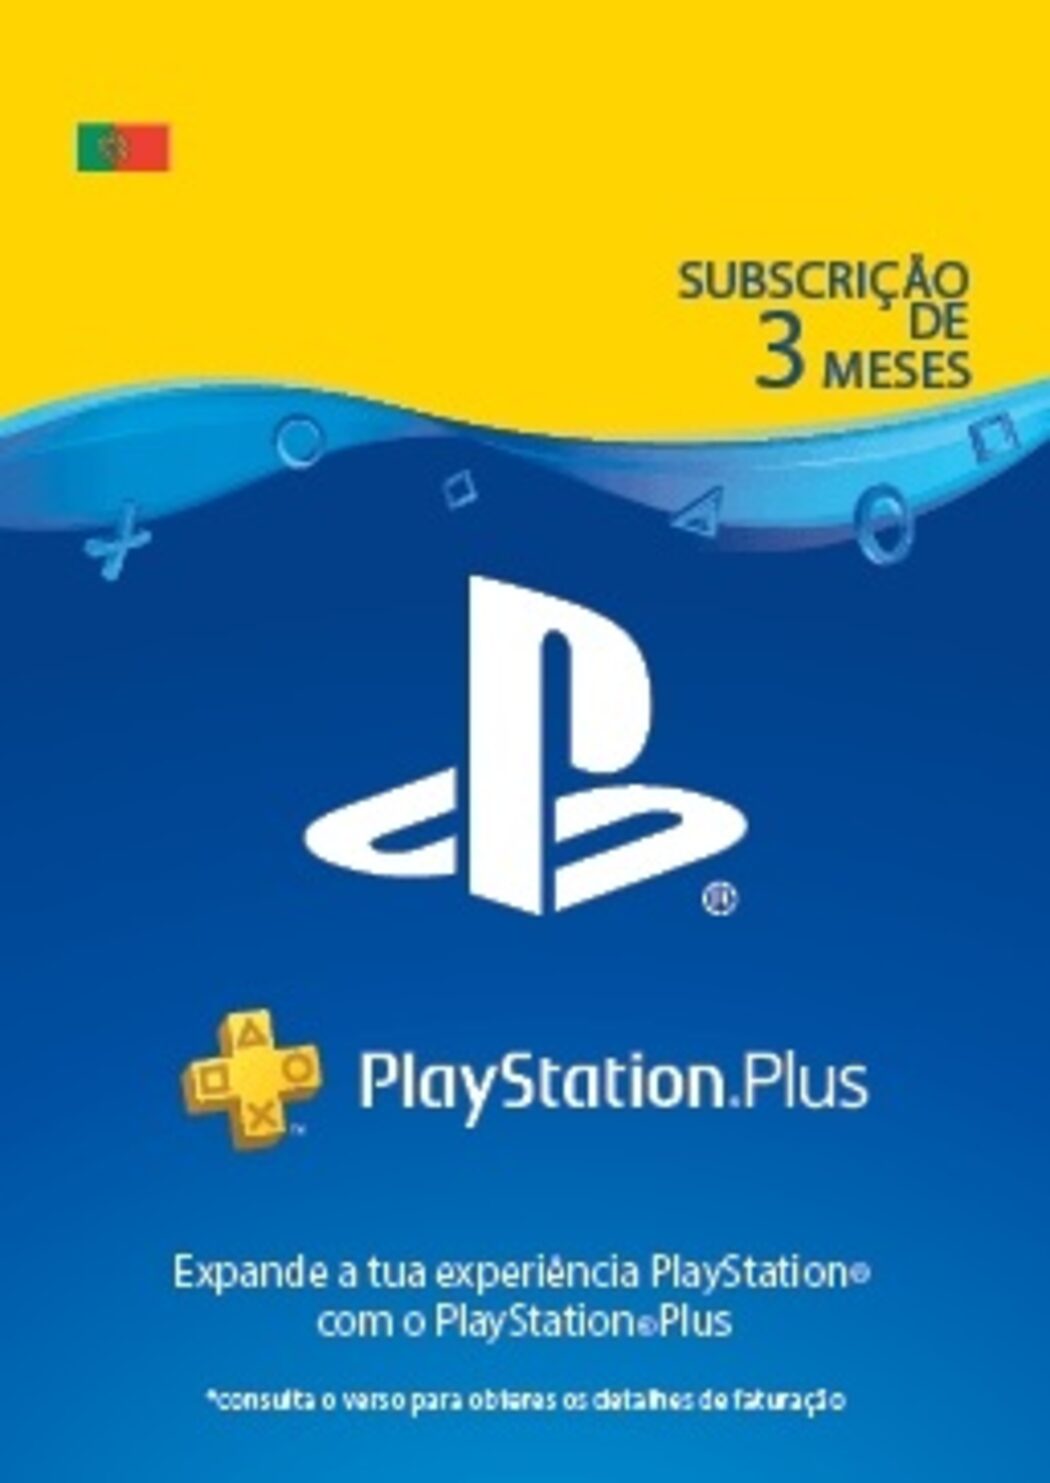 Nova subscrição PlayStation Plus chega em junho